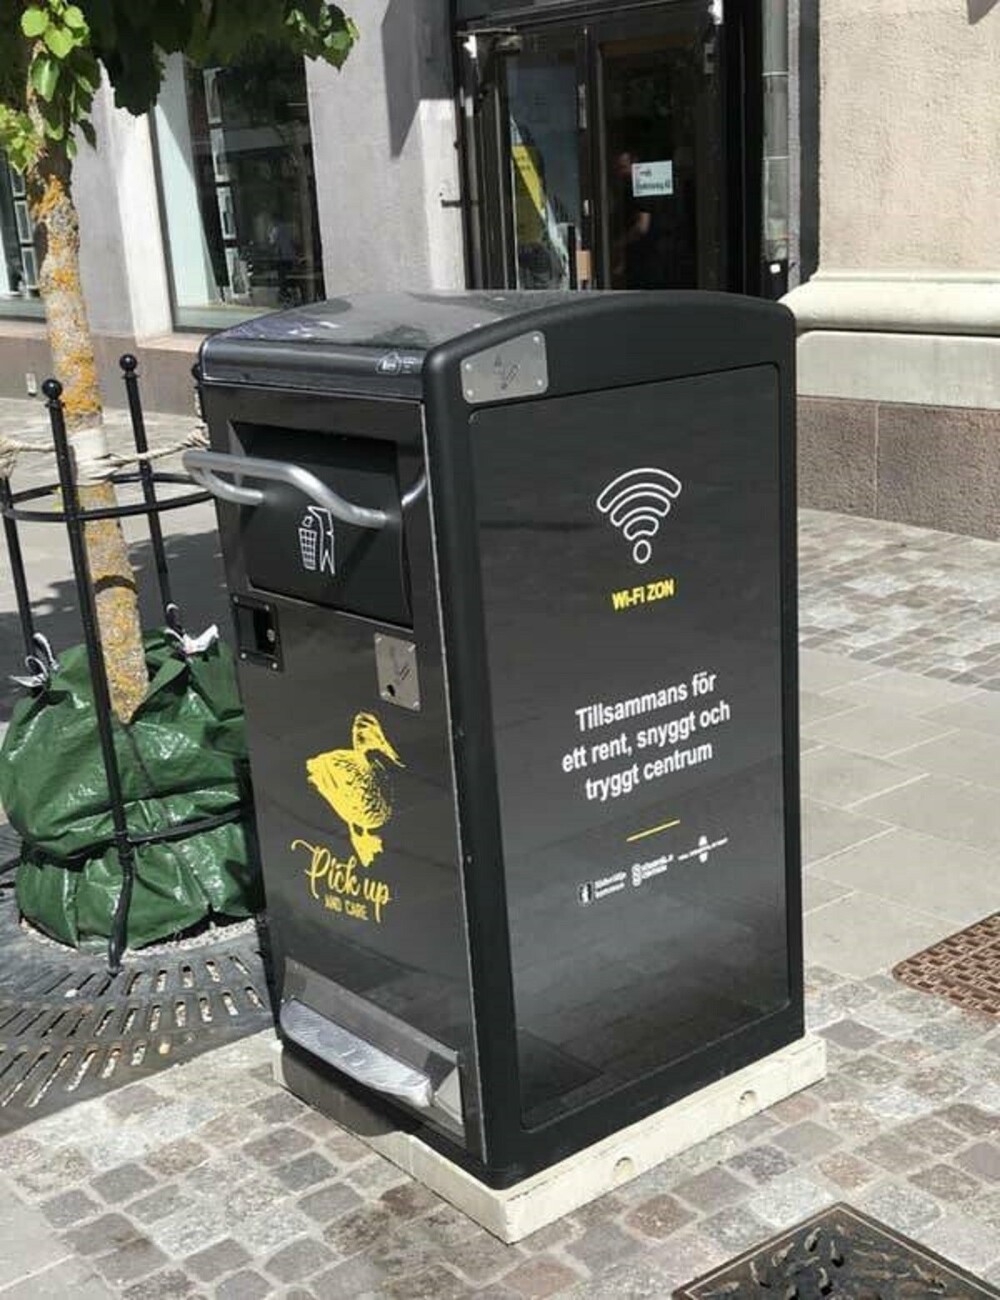 21. Станция Wi-Fi в мусорном баке в Швеции. Чтобы люди чаще останавливались и выбрасывали мусор